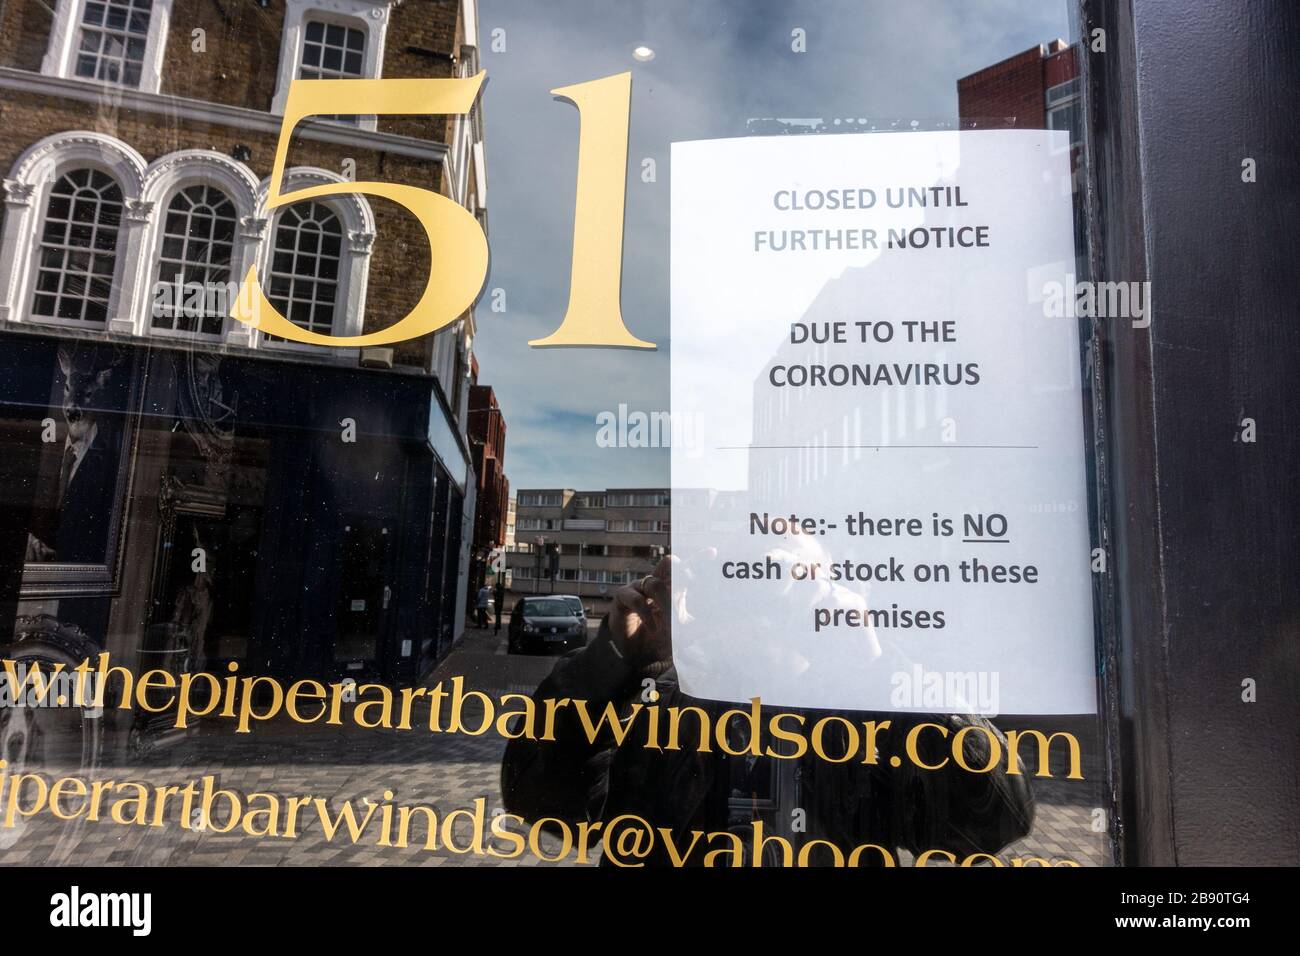 Ein Hinweis in einer Kneipe in Windsor UK sagt den Leuten, dass die Kneipe wegen der Coronavirus Pandemie bis auf weiteres geschlossen ist. Stockfoto